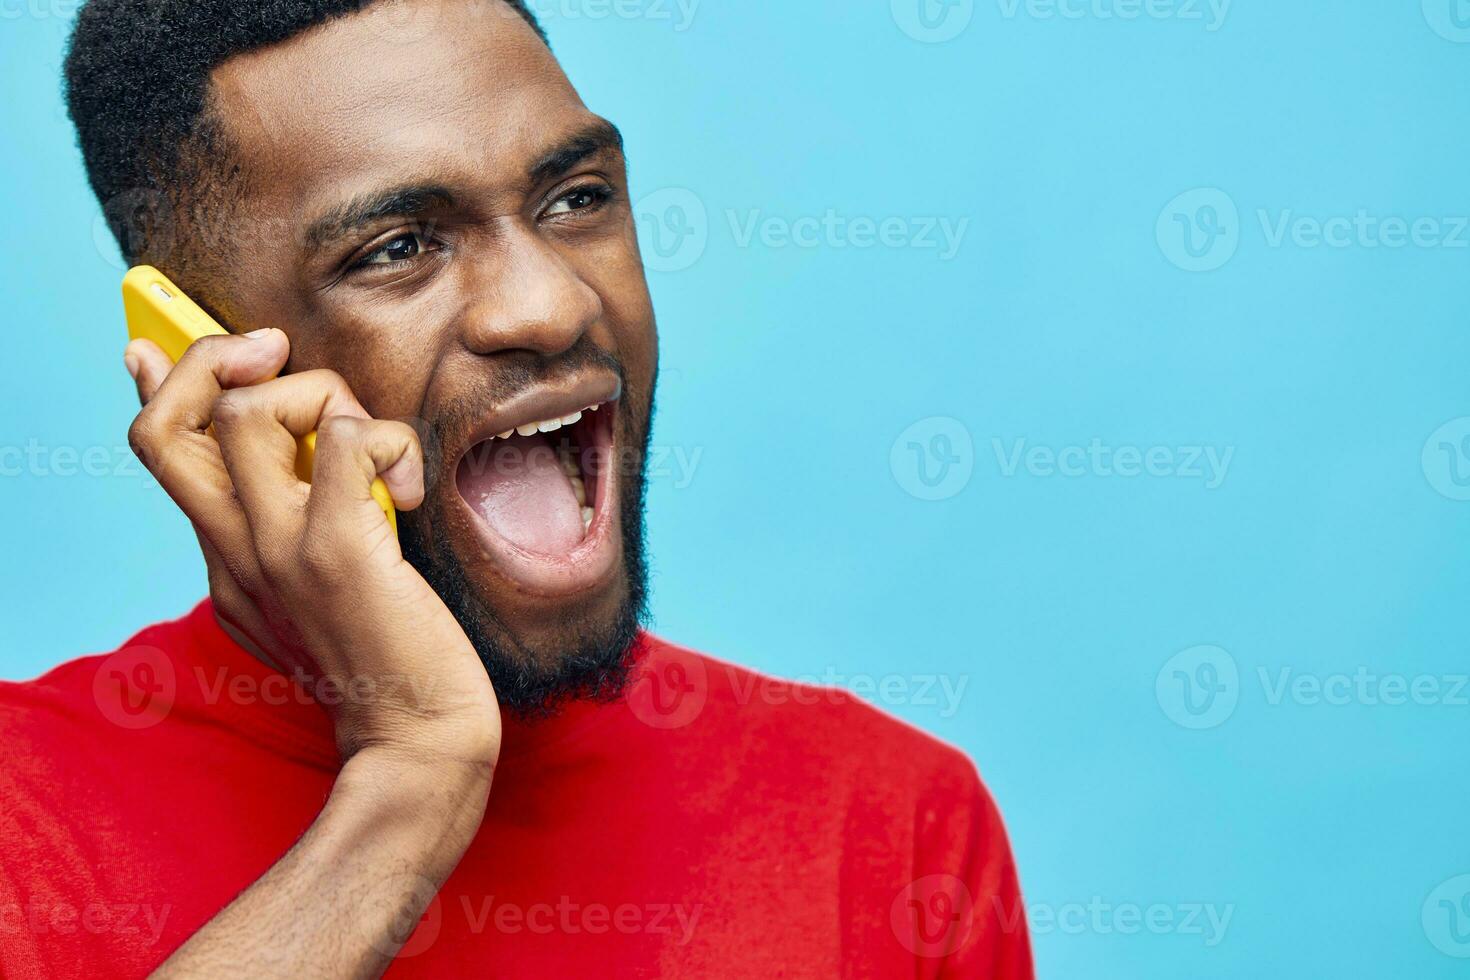 noir homme téléphone Contexte La technologie content application la personne mobile africain sourire Jeune photo